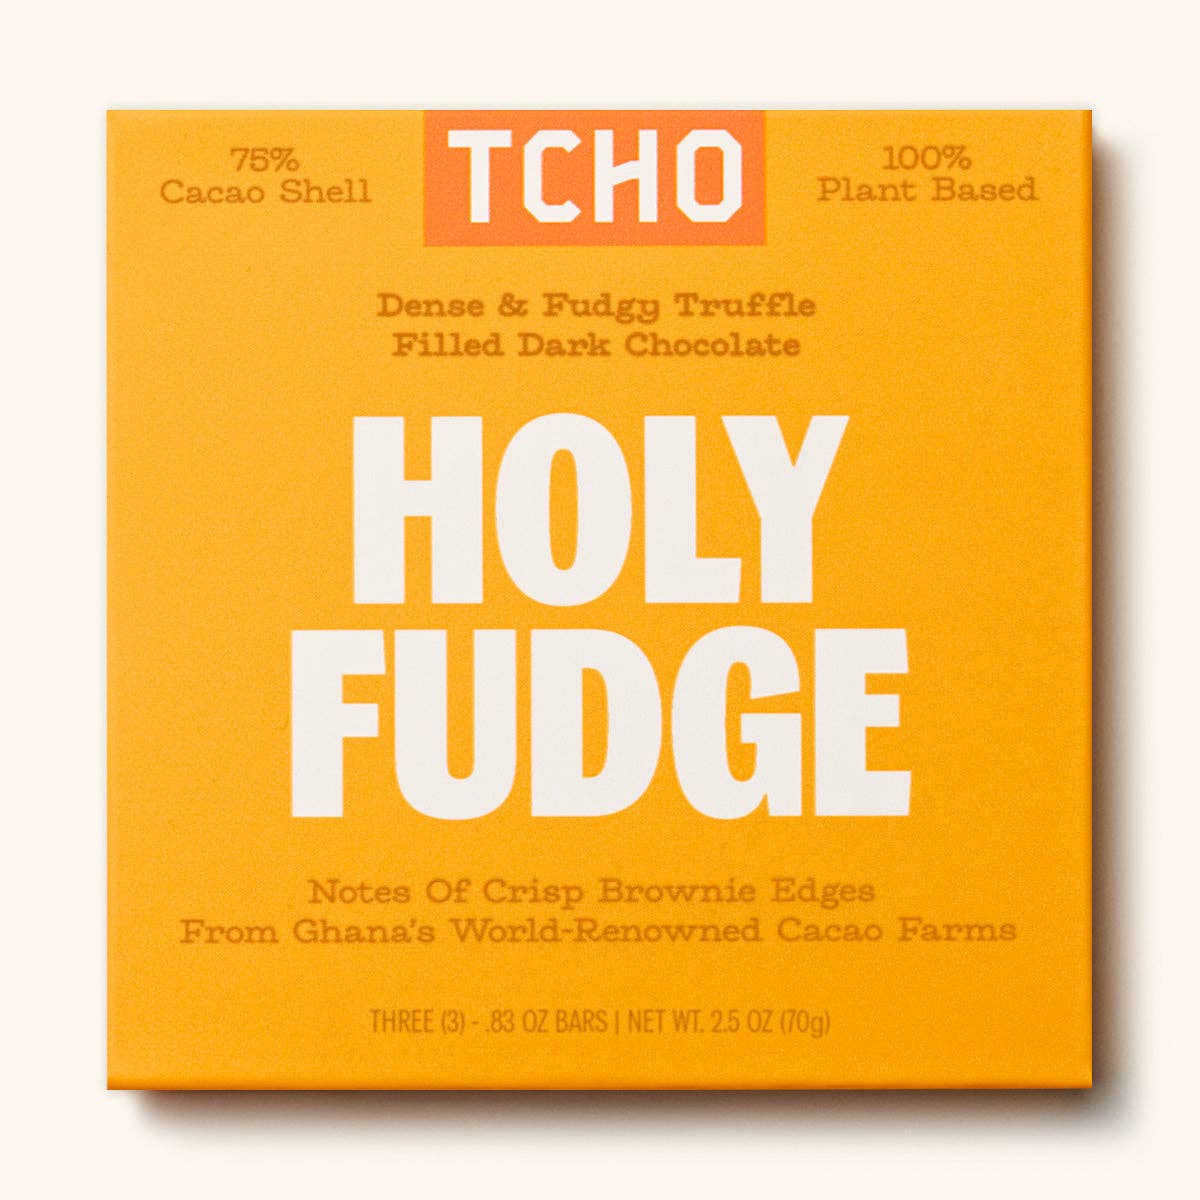 TCHO - Holy Fudge: 1 Pack